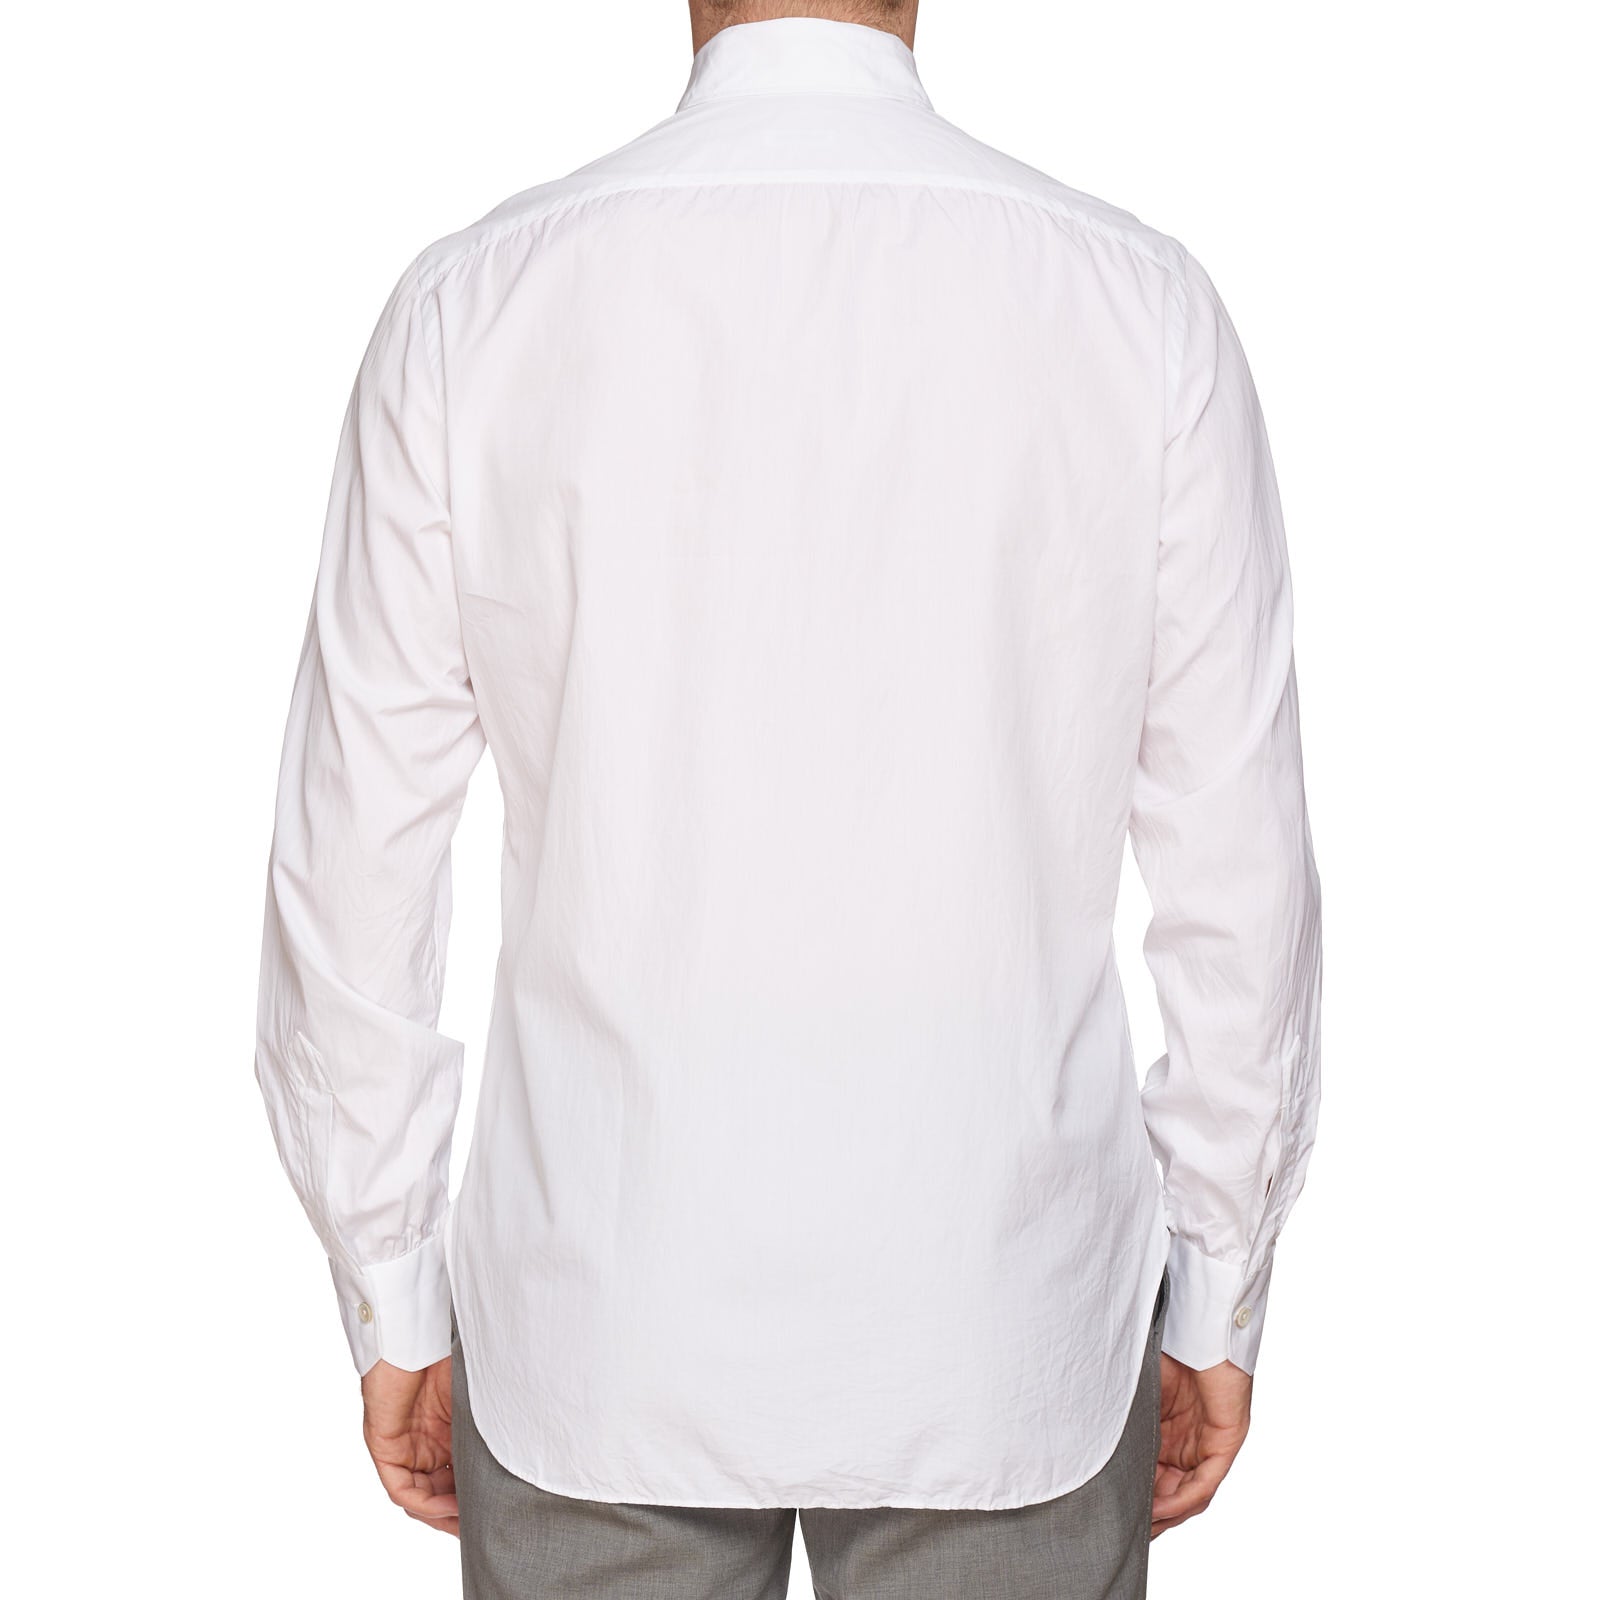 KITON Napoli Handmade White Cotton Poplin Button-Down Shirt 39 NEW US 15.5 KITON